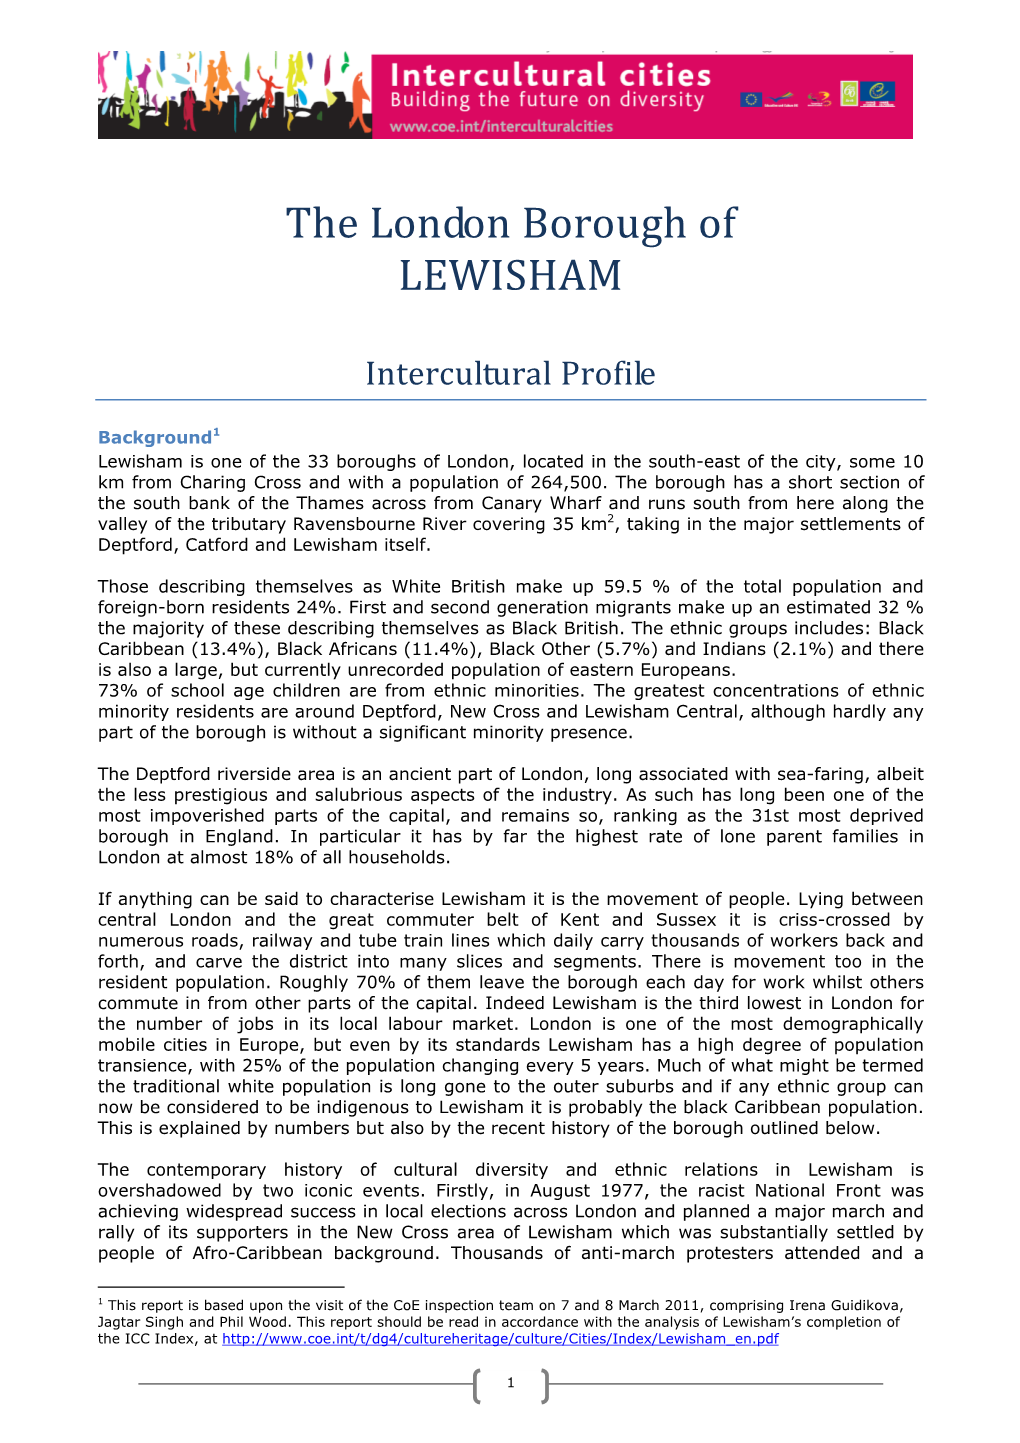 The London Borough of LEWISHAM